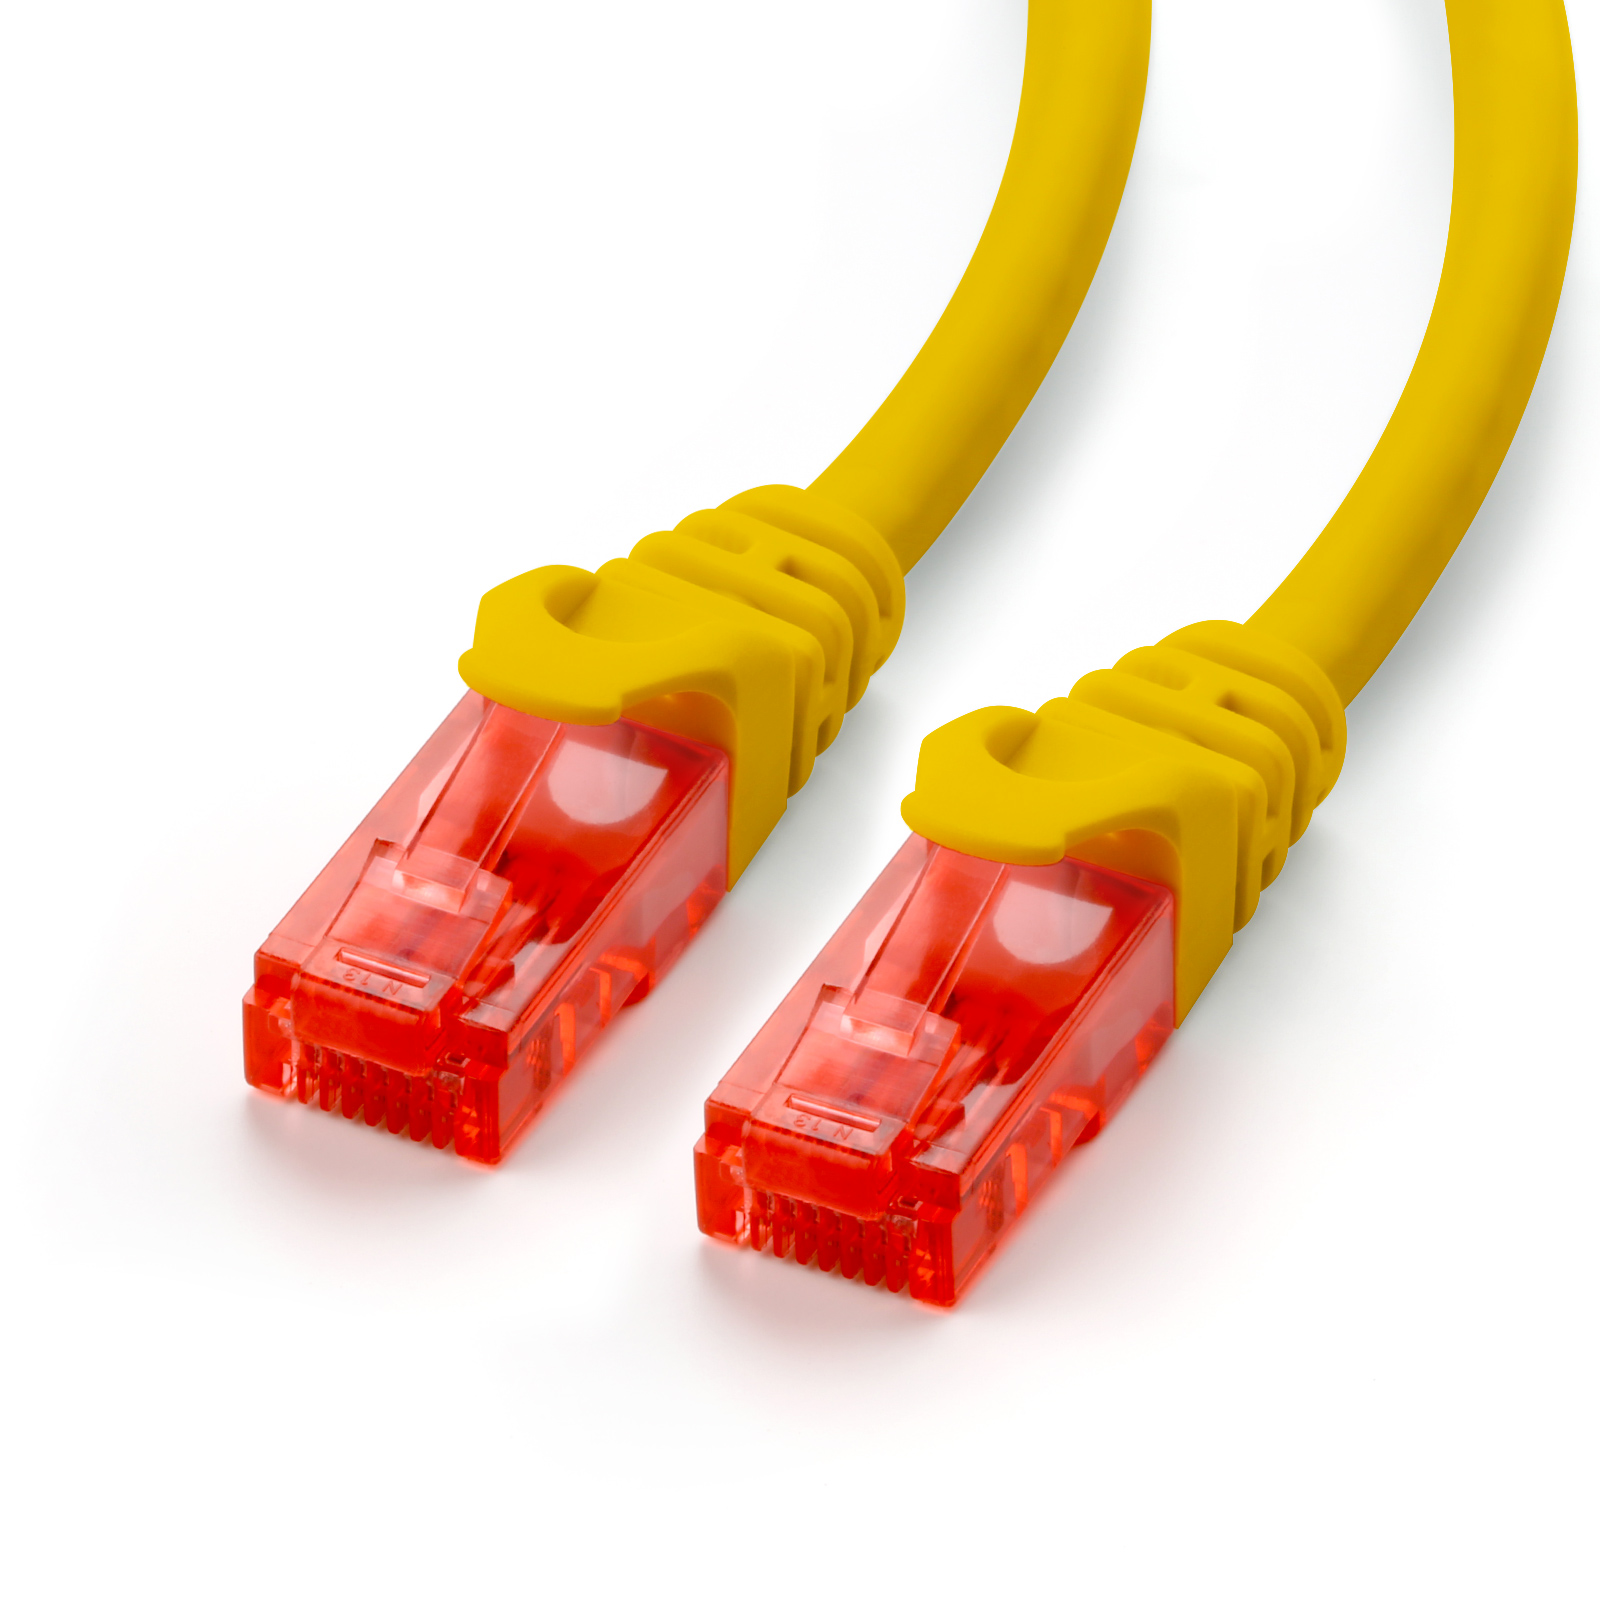 Cat6 Kabel, gelb Patchkabel, CSL LAN 3m